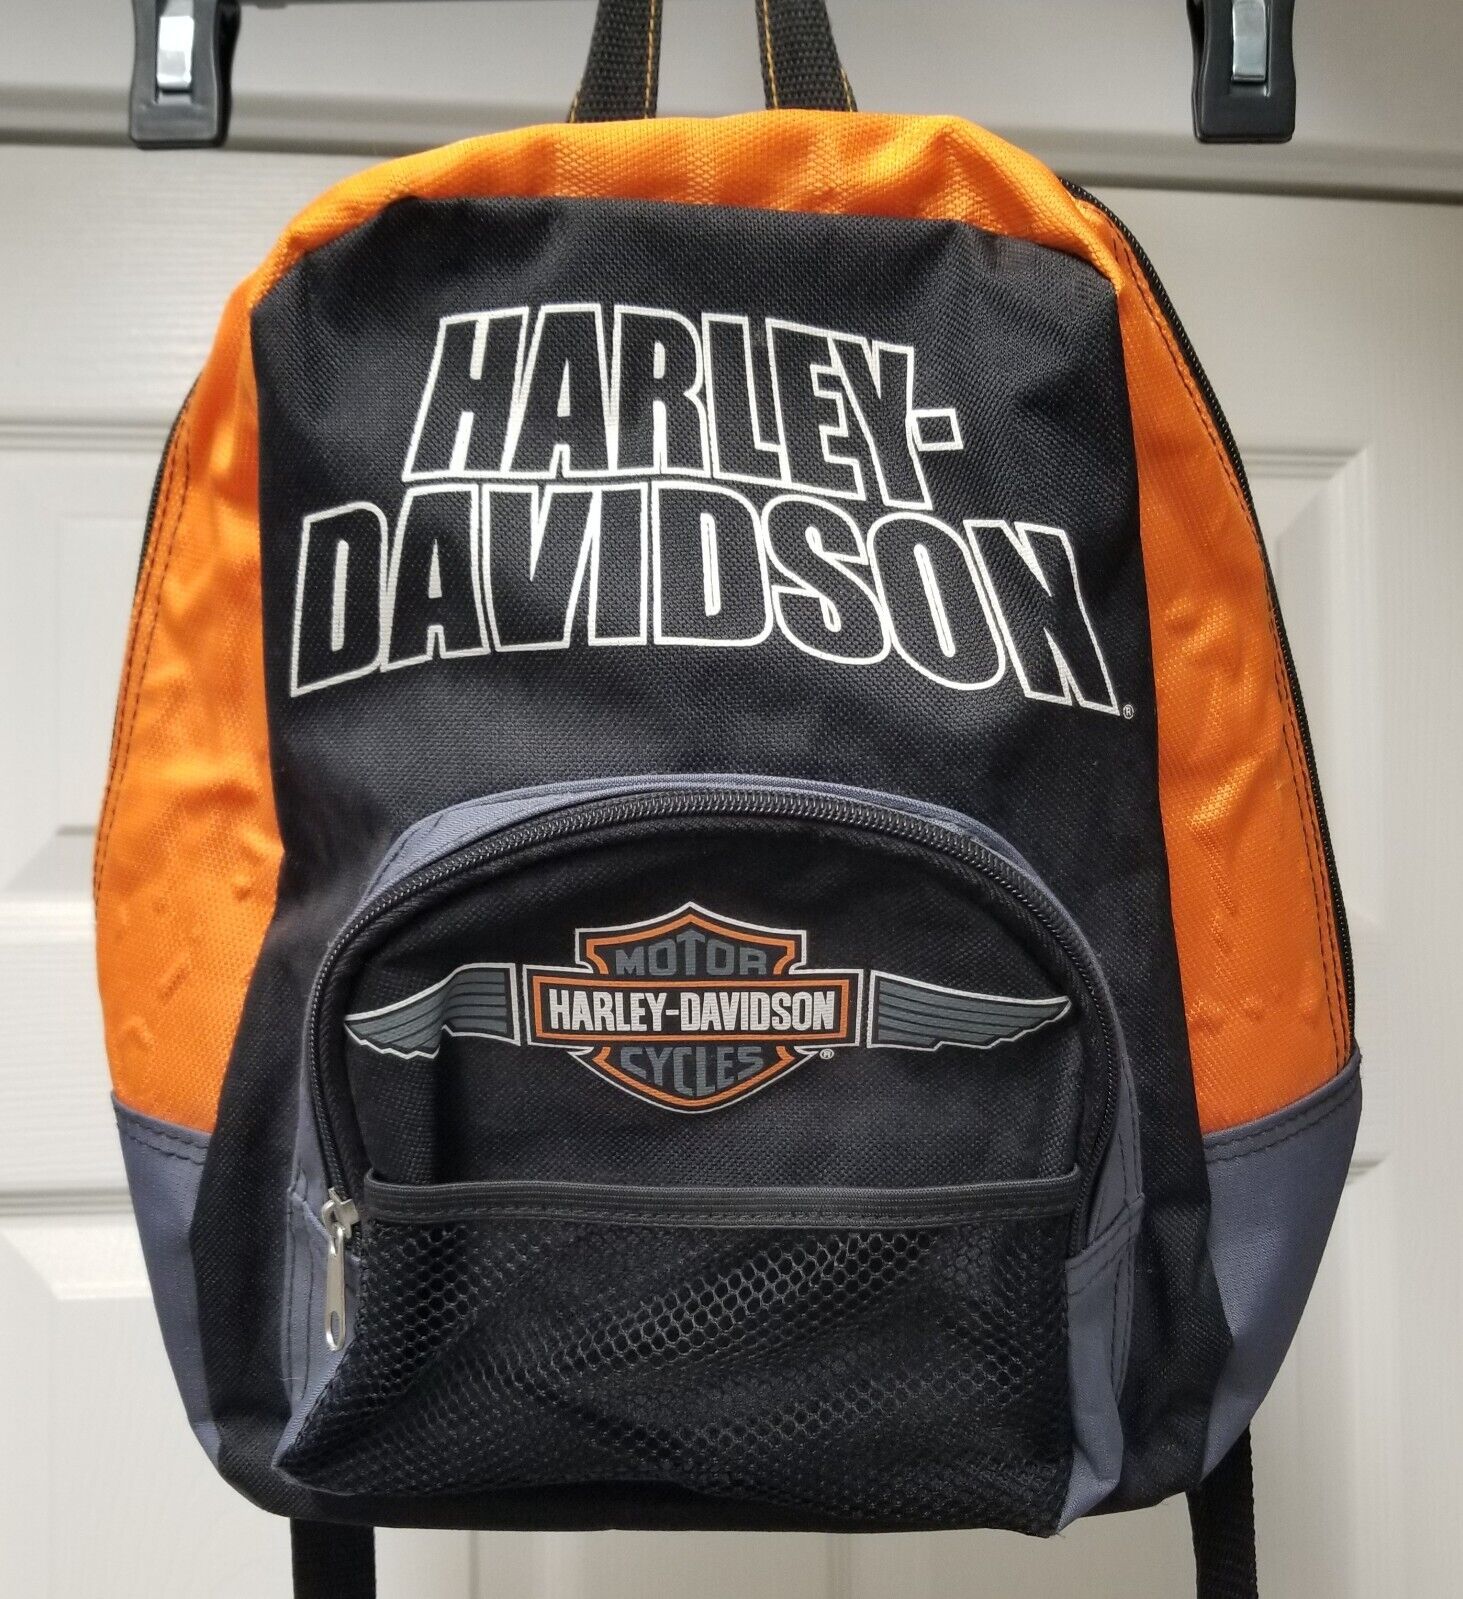 Harley Davidson Backpack - Used